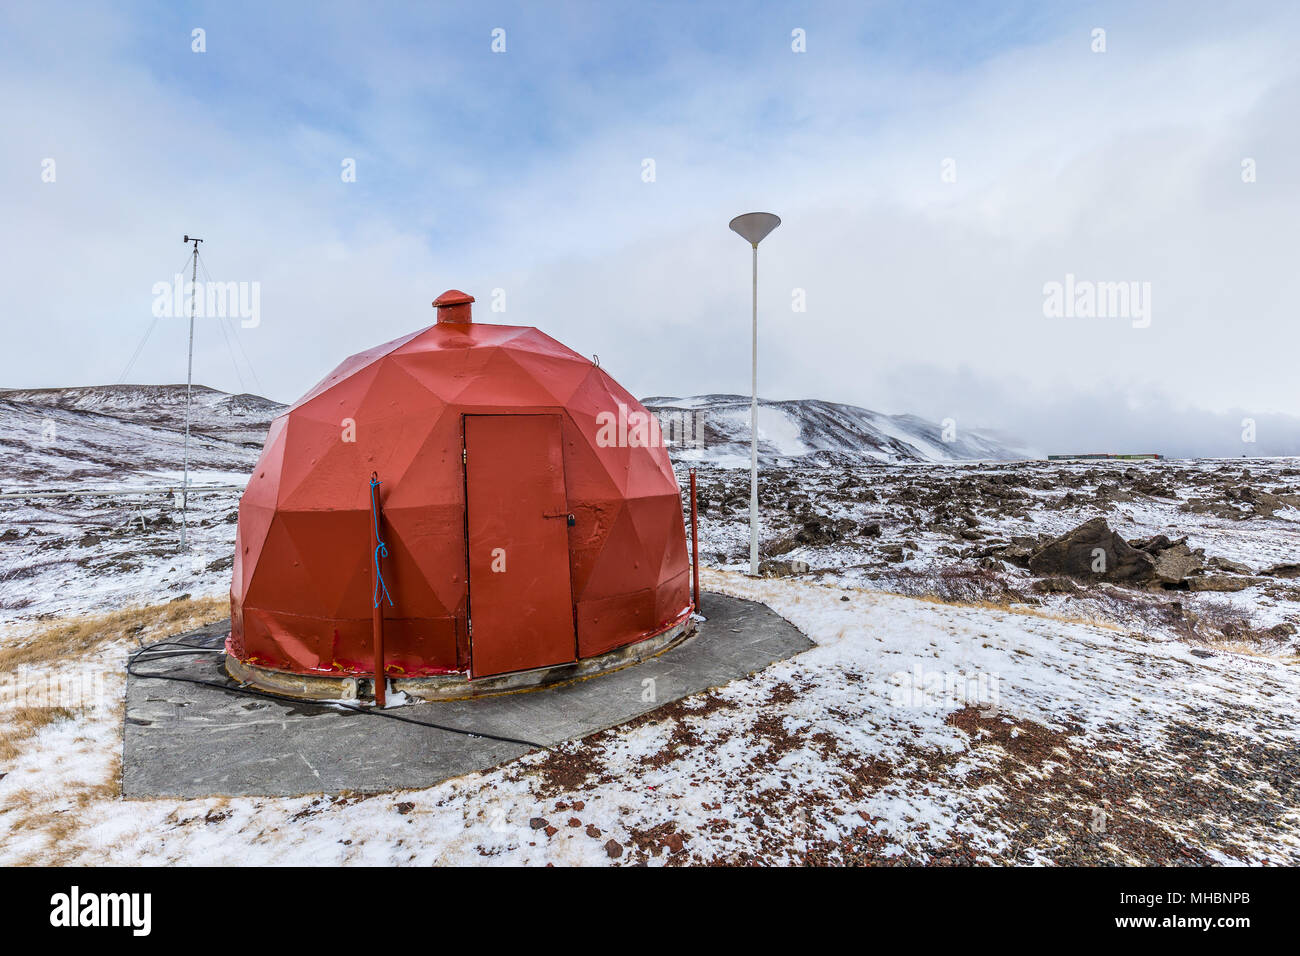 Geodesic rouge versé pour l'équipement technique près de la centrale électrique géothermique de Krafla au lac Myvatn, l'Islande Banque D'Images